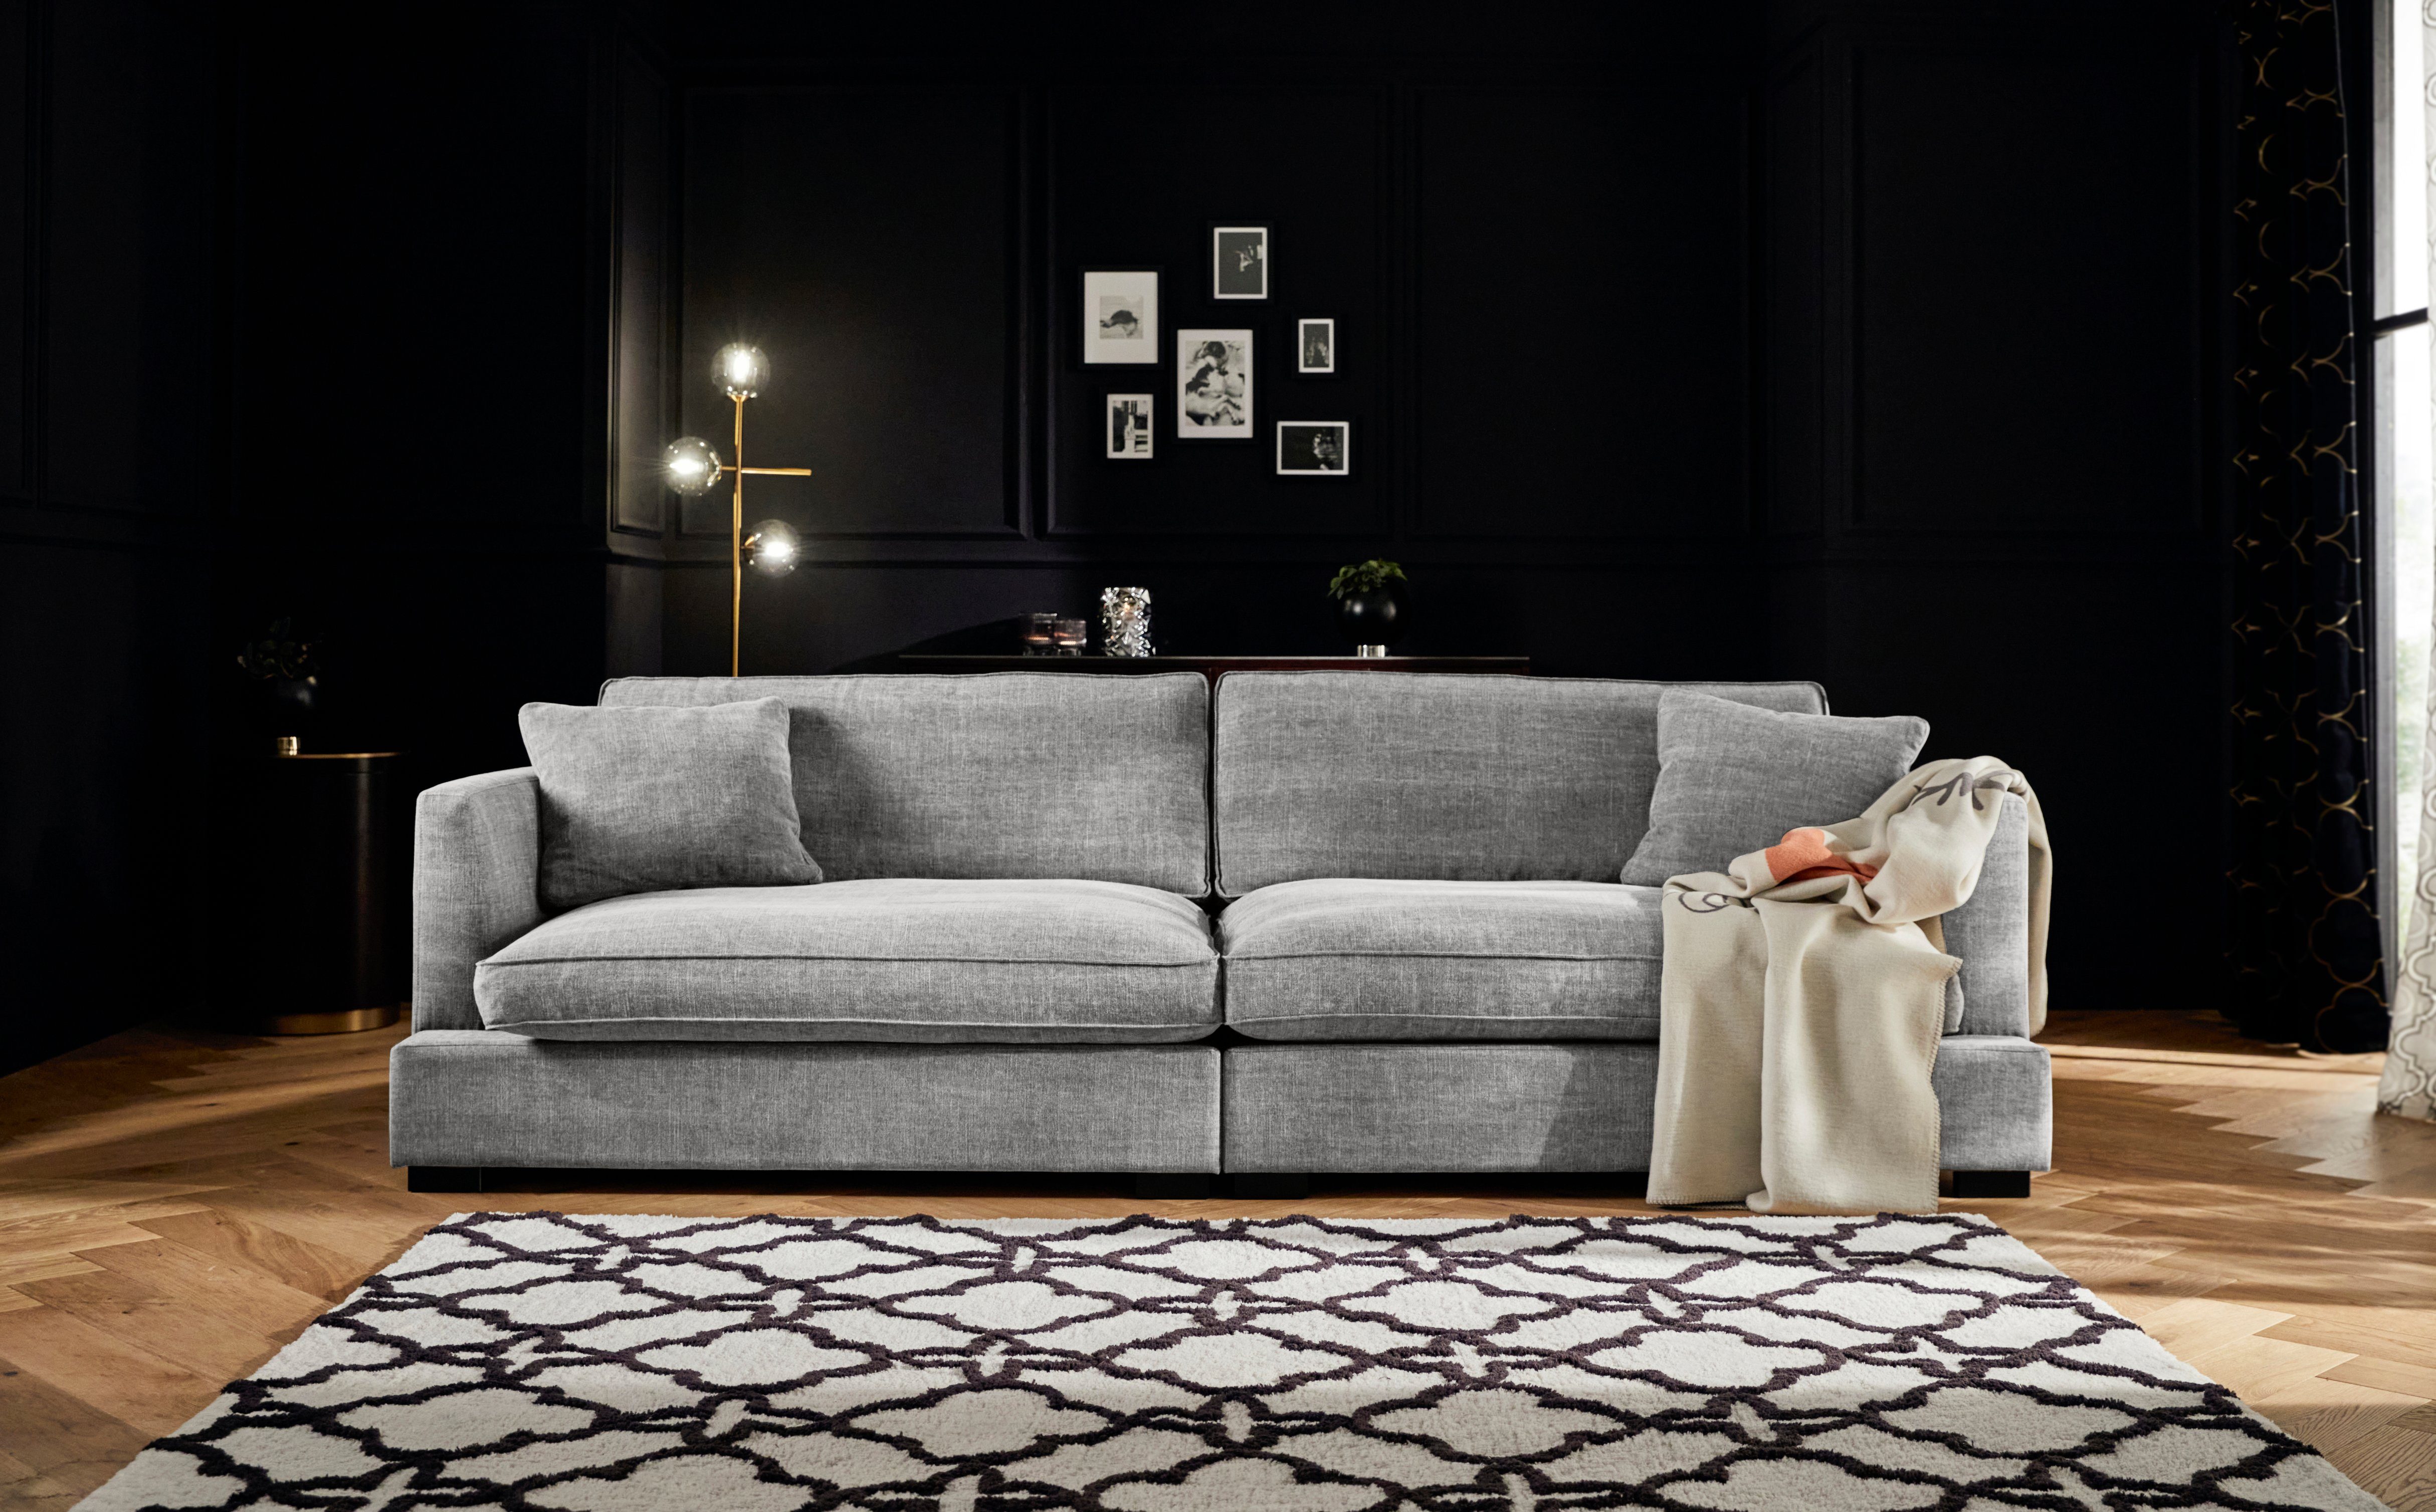 Guido Maria Kretschmer Home&Living Megabank Annera bijzonder zacht en knuffelig zitcomfort, met extra diepe zitoppervlakken